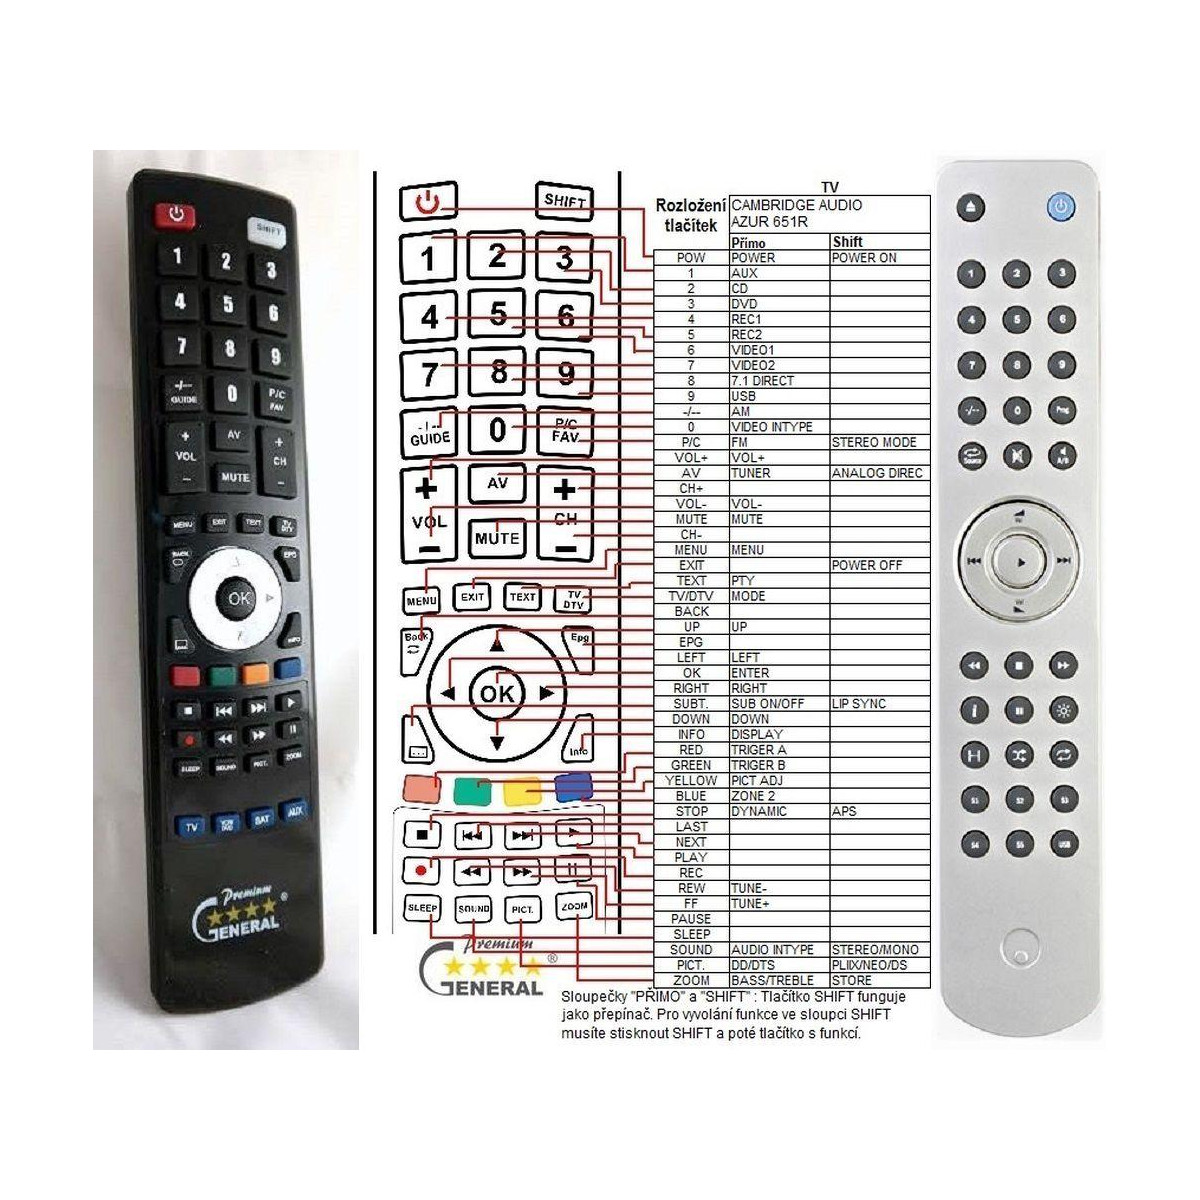 More about CAMBRIDGE AUDIO AZUR 651R, AUDIO AZUR 751R plus ovládání TV (mini TV) - dálkový ovladač duplikát kompatibilní